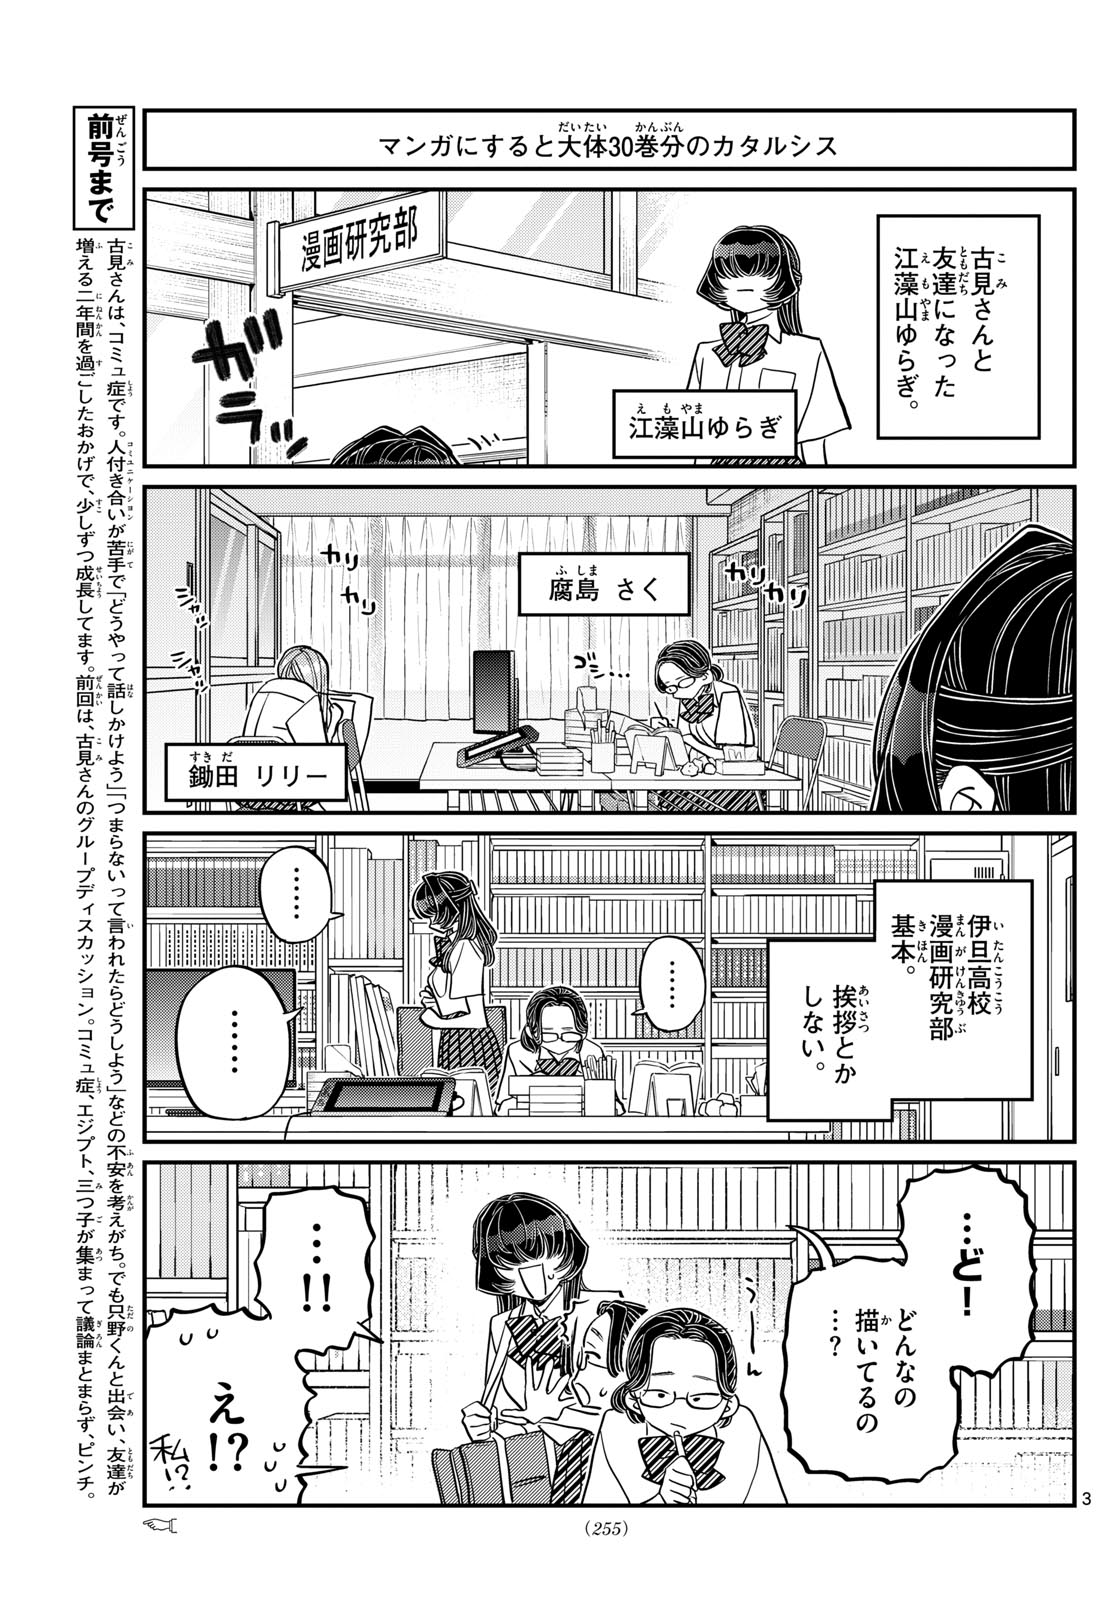 Komi-san wa Komyushou Desu - Chapter 440 - Page 3